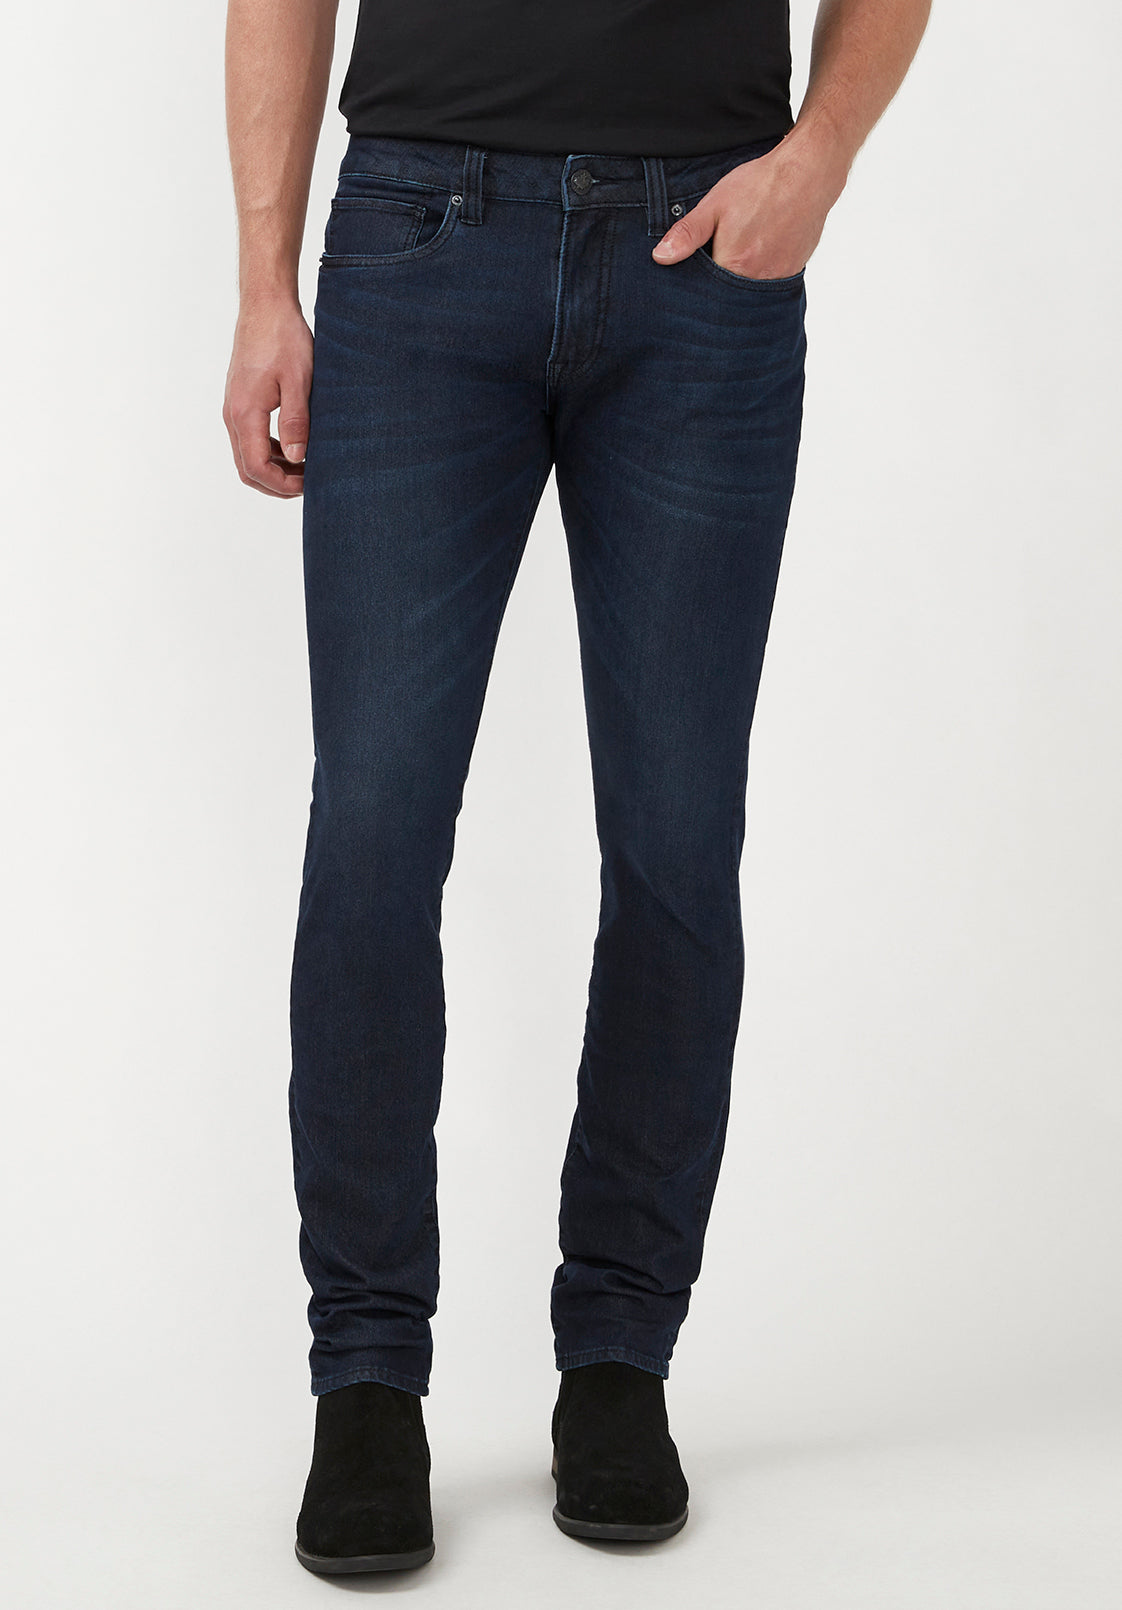 Skinny Max Men's Jeans in Sanded and Faded Dark Blue - BM22589 ...